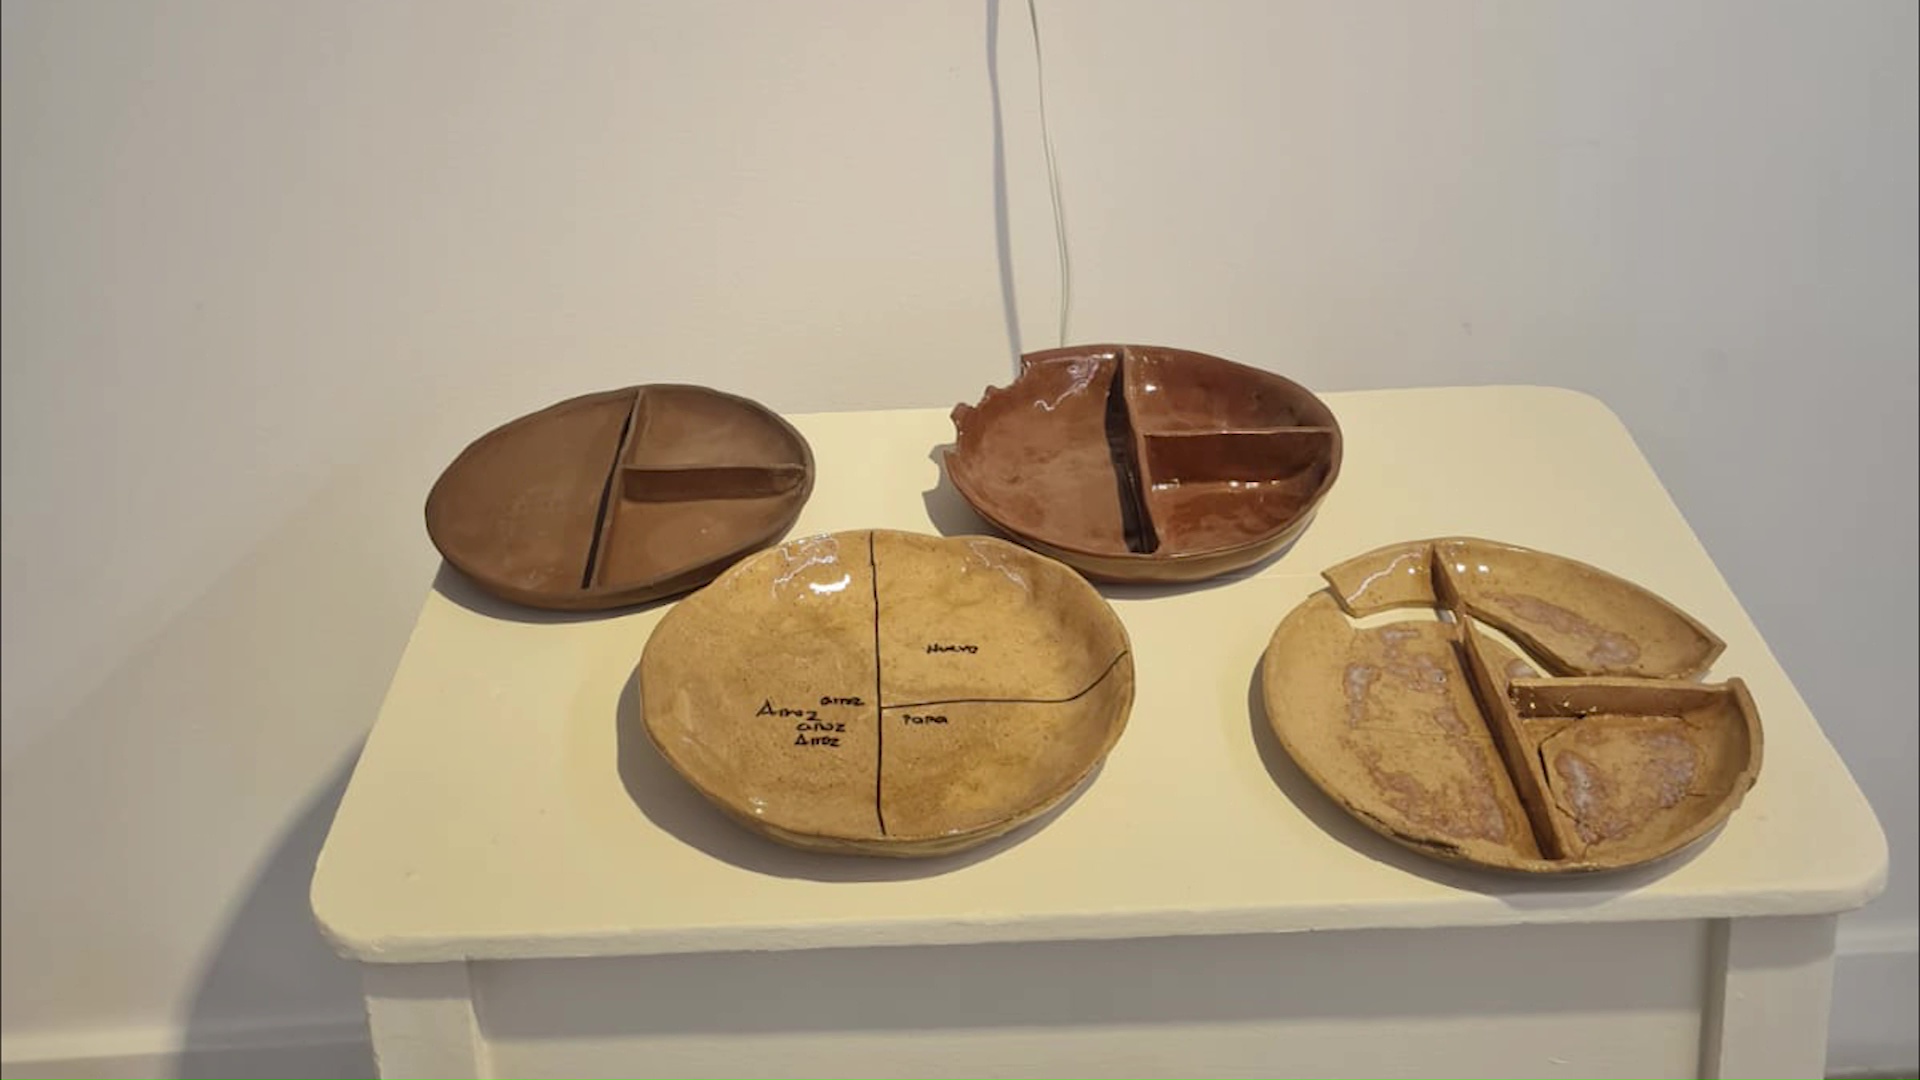 Exposición de artistas dedicados a la creación cerámica